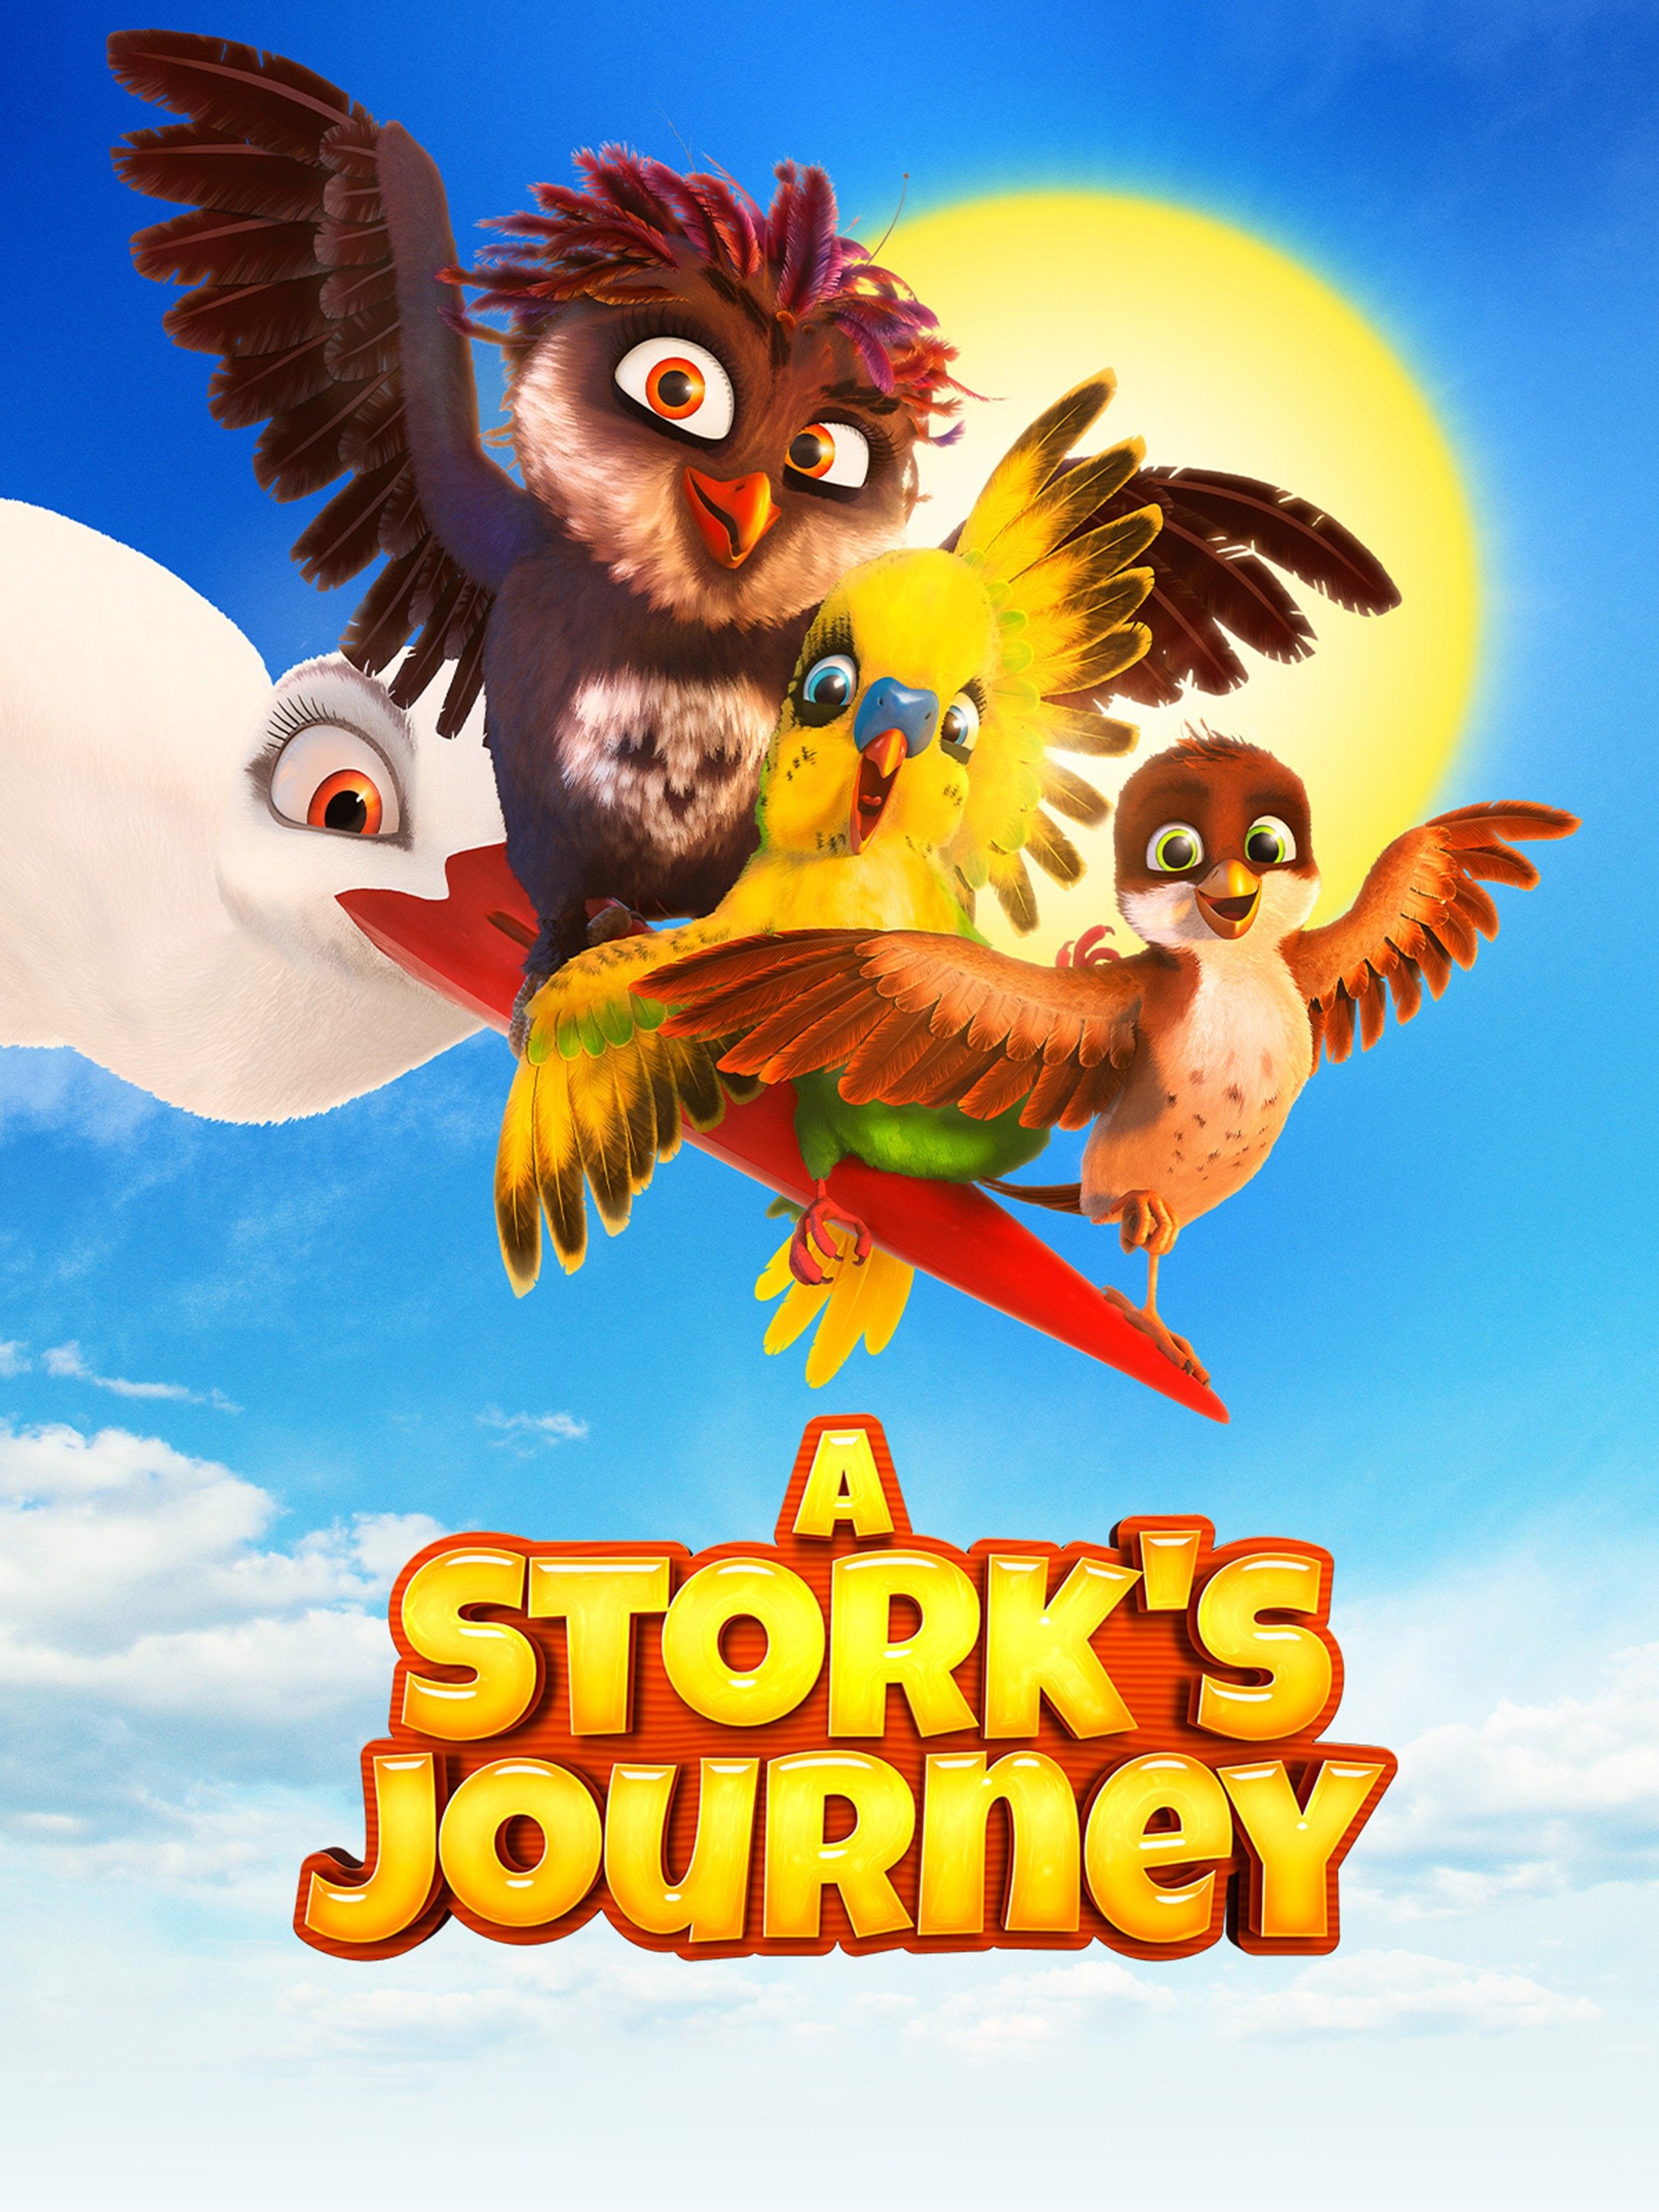 a stork's journey 2